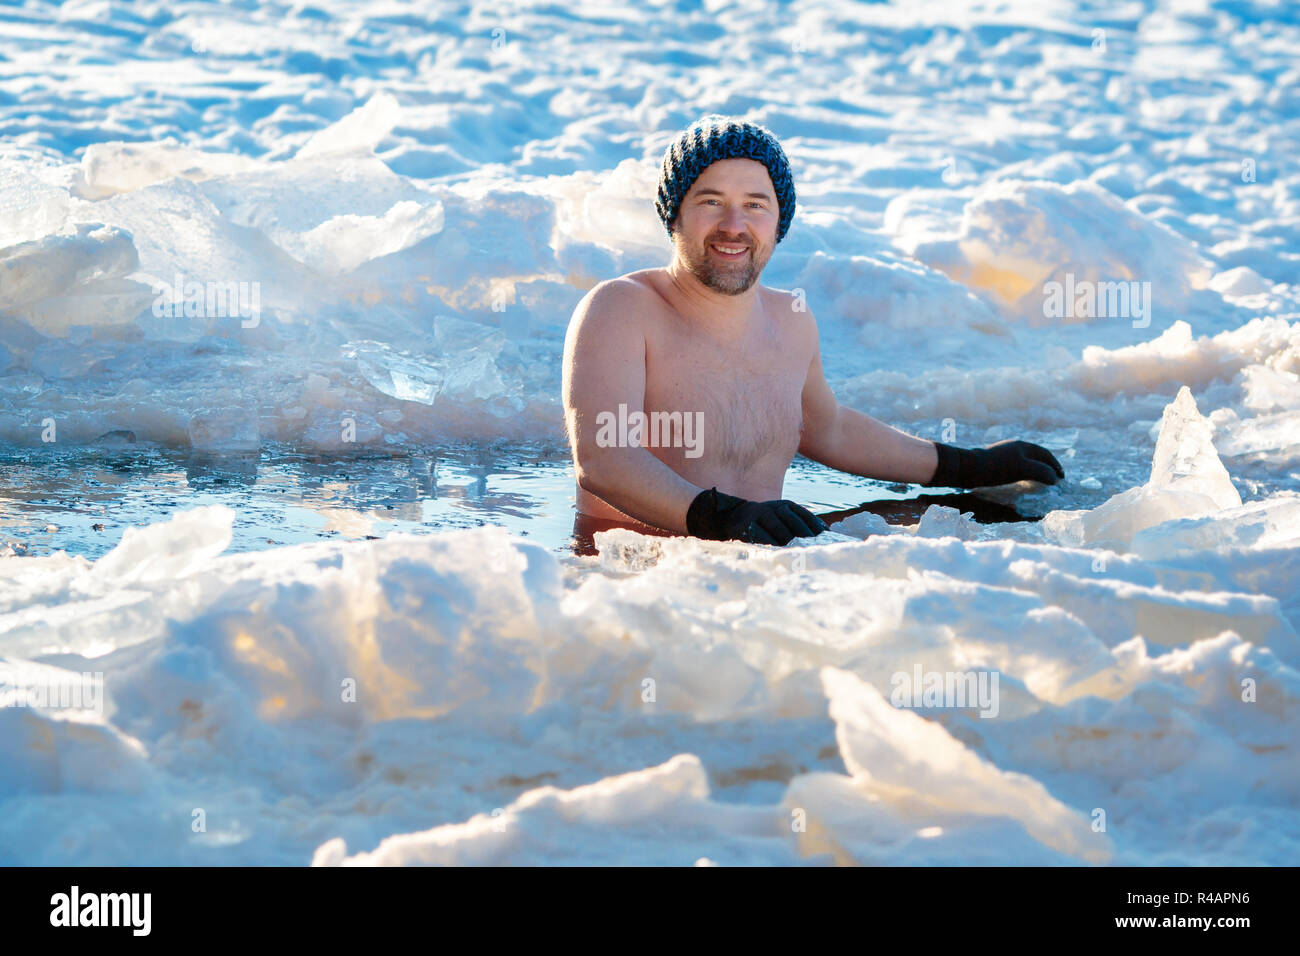 Piscina de Invierno. Hombre valiente en un agujero de hielo. Foto de stock